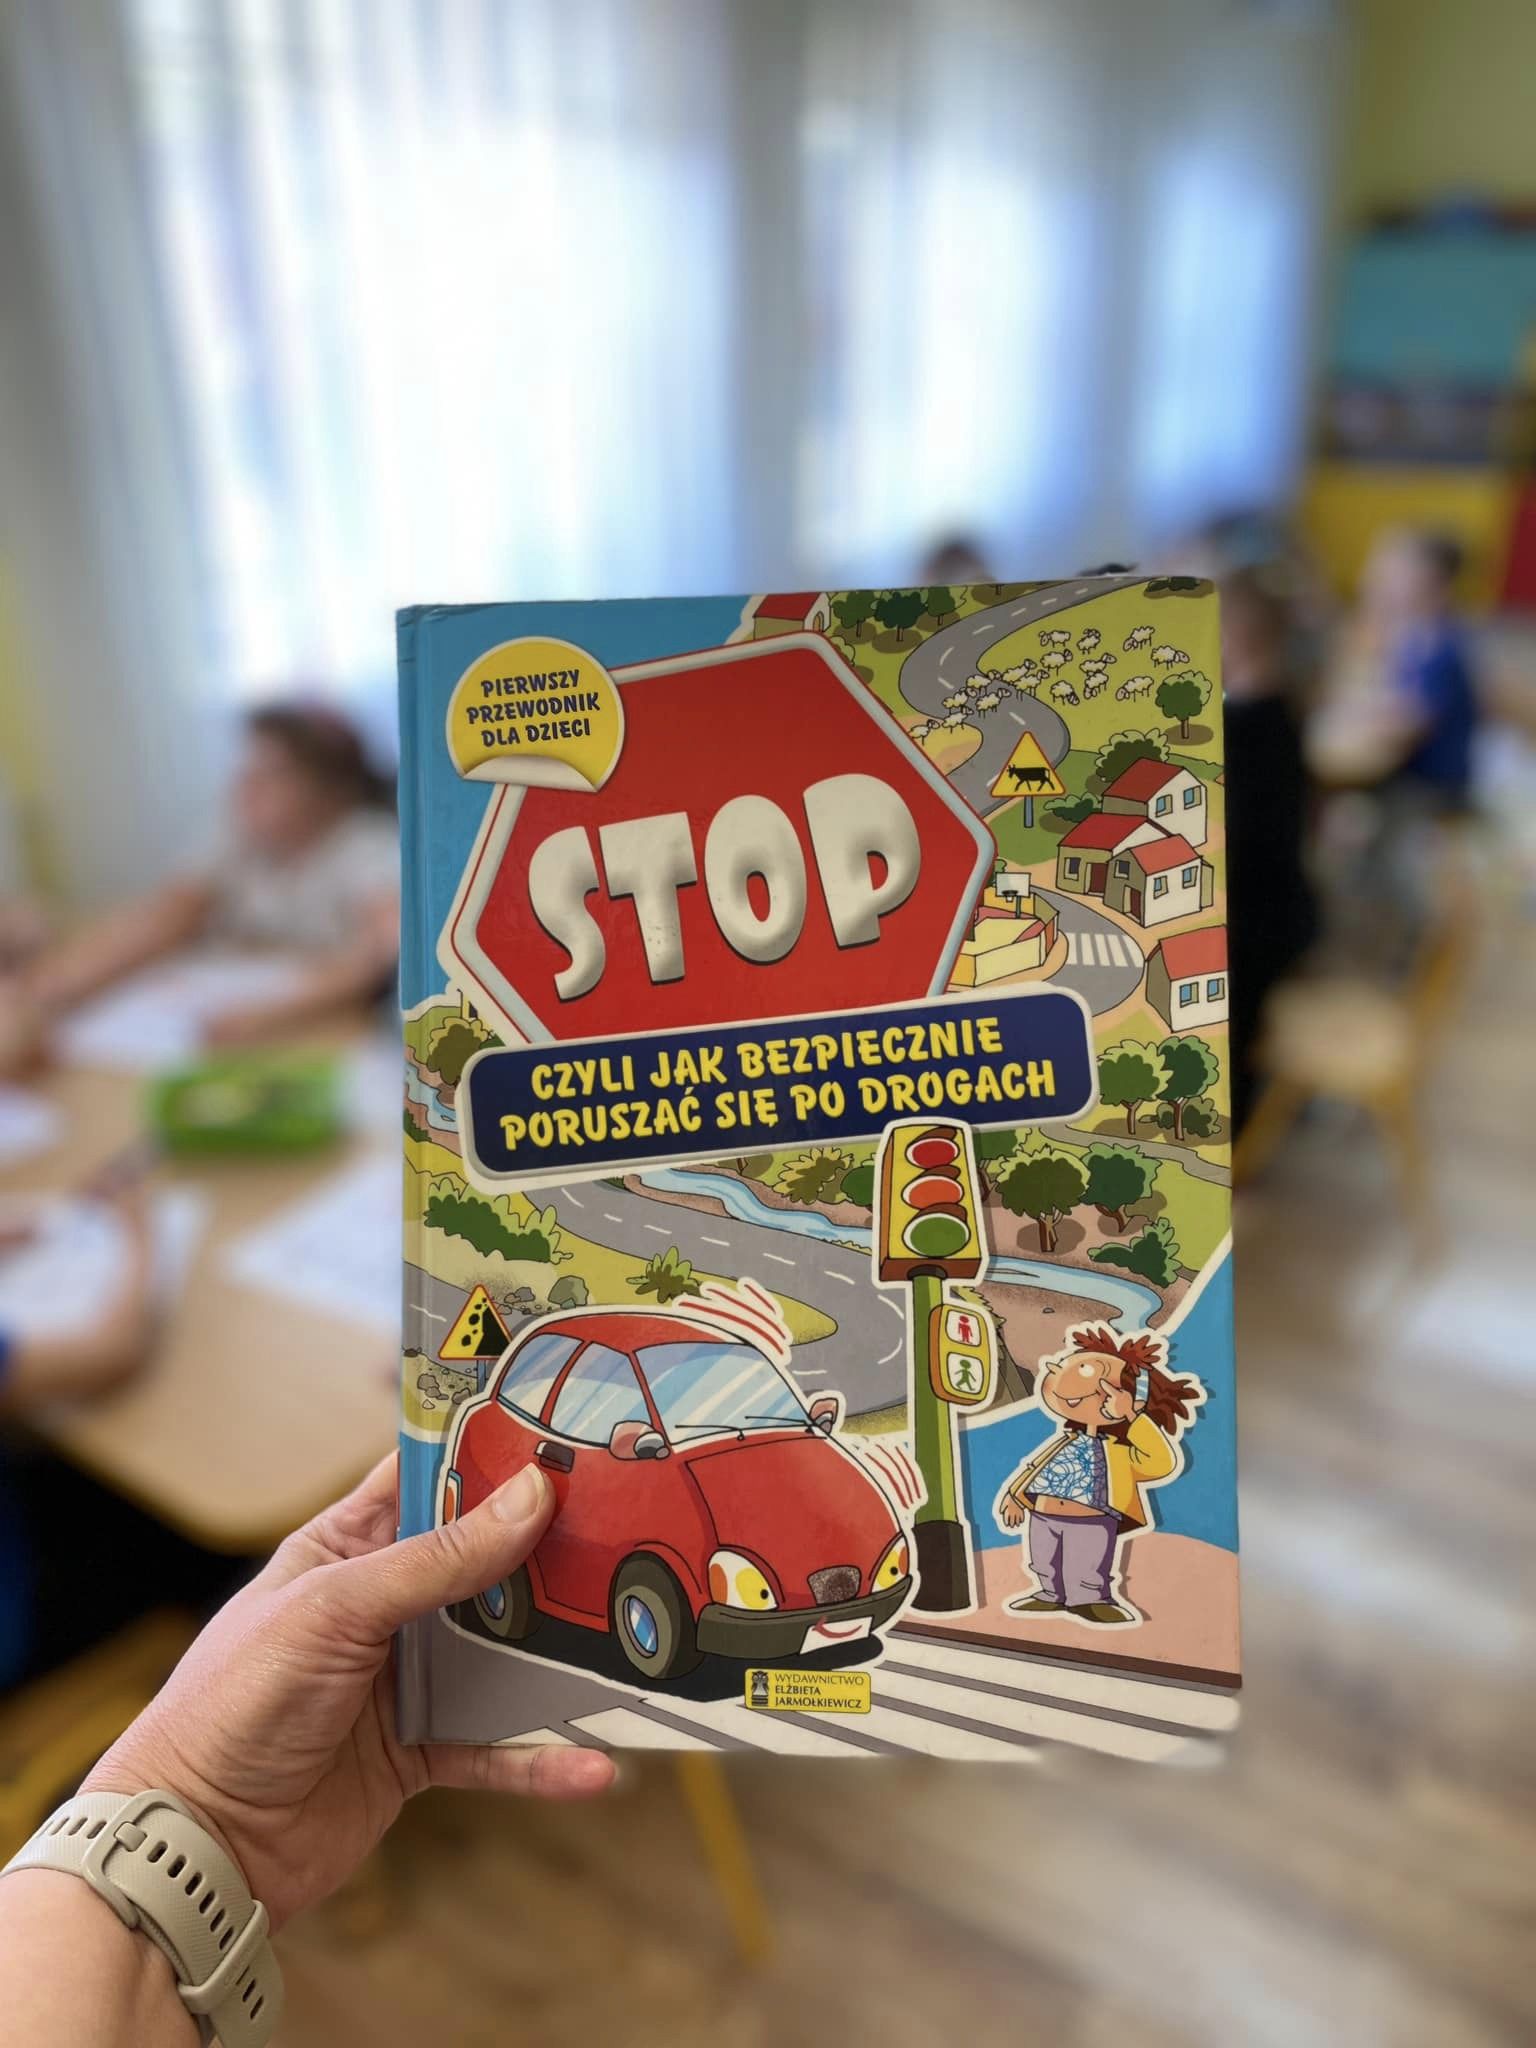 STOP – czyli jak bezpiecznie poruszać się po drodze!